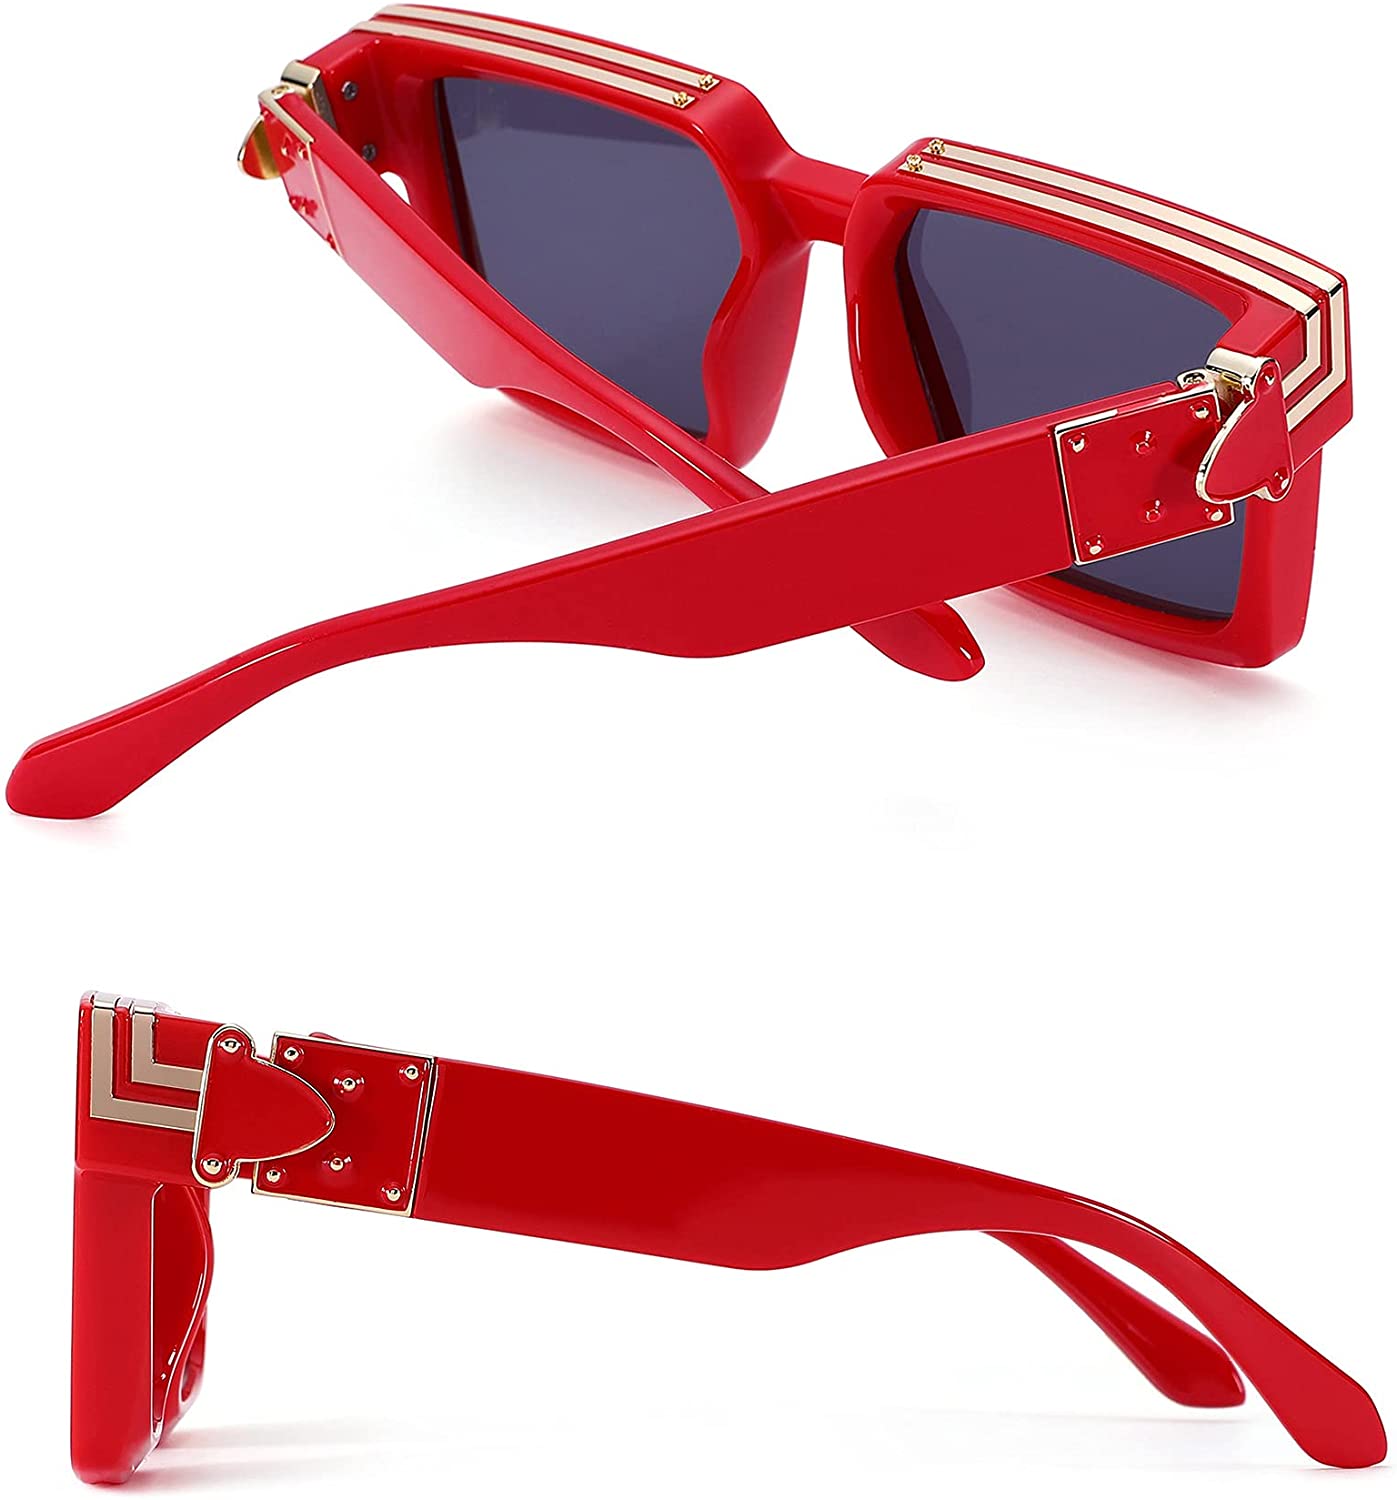 Authentic Louis Vuitton M96006wn Millionaire Sunglasses for Sale